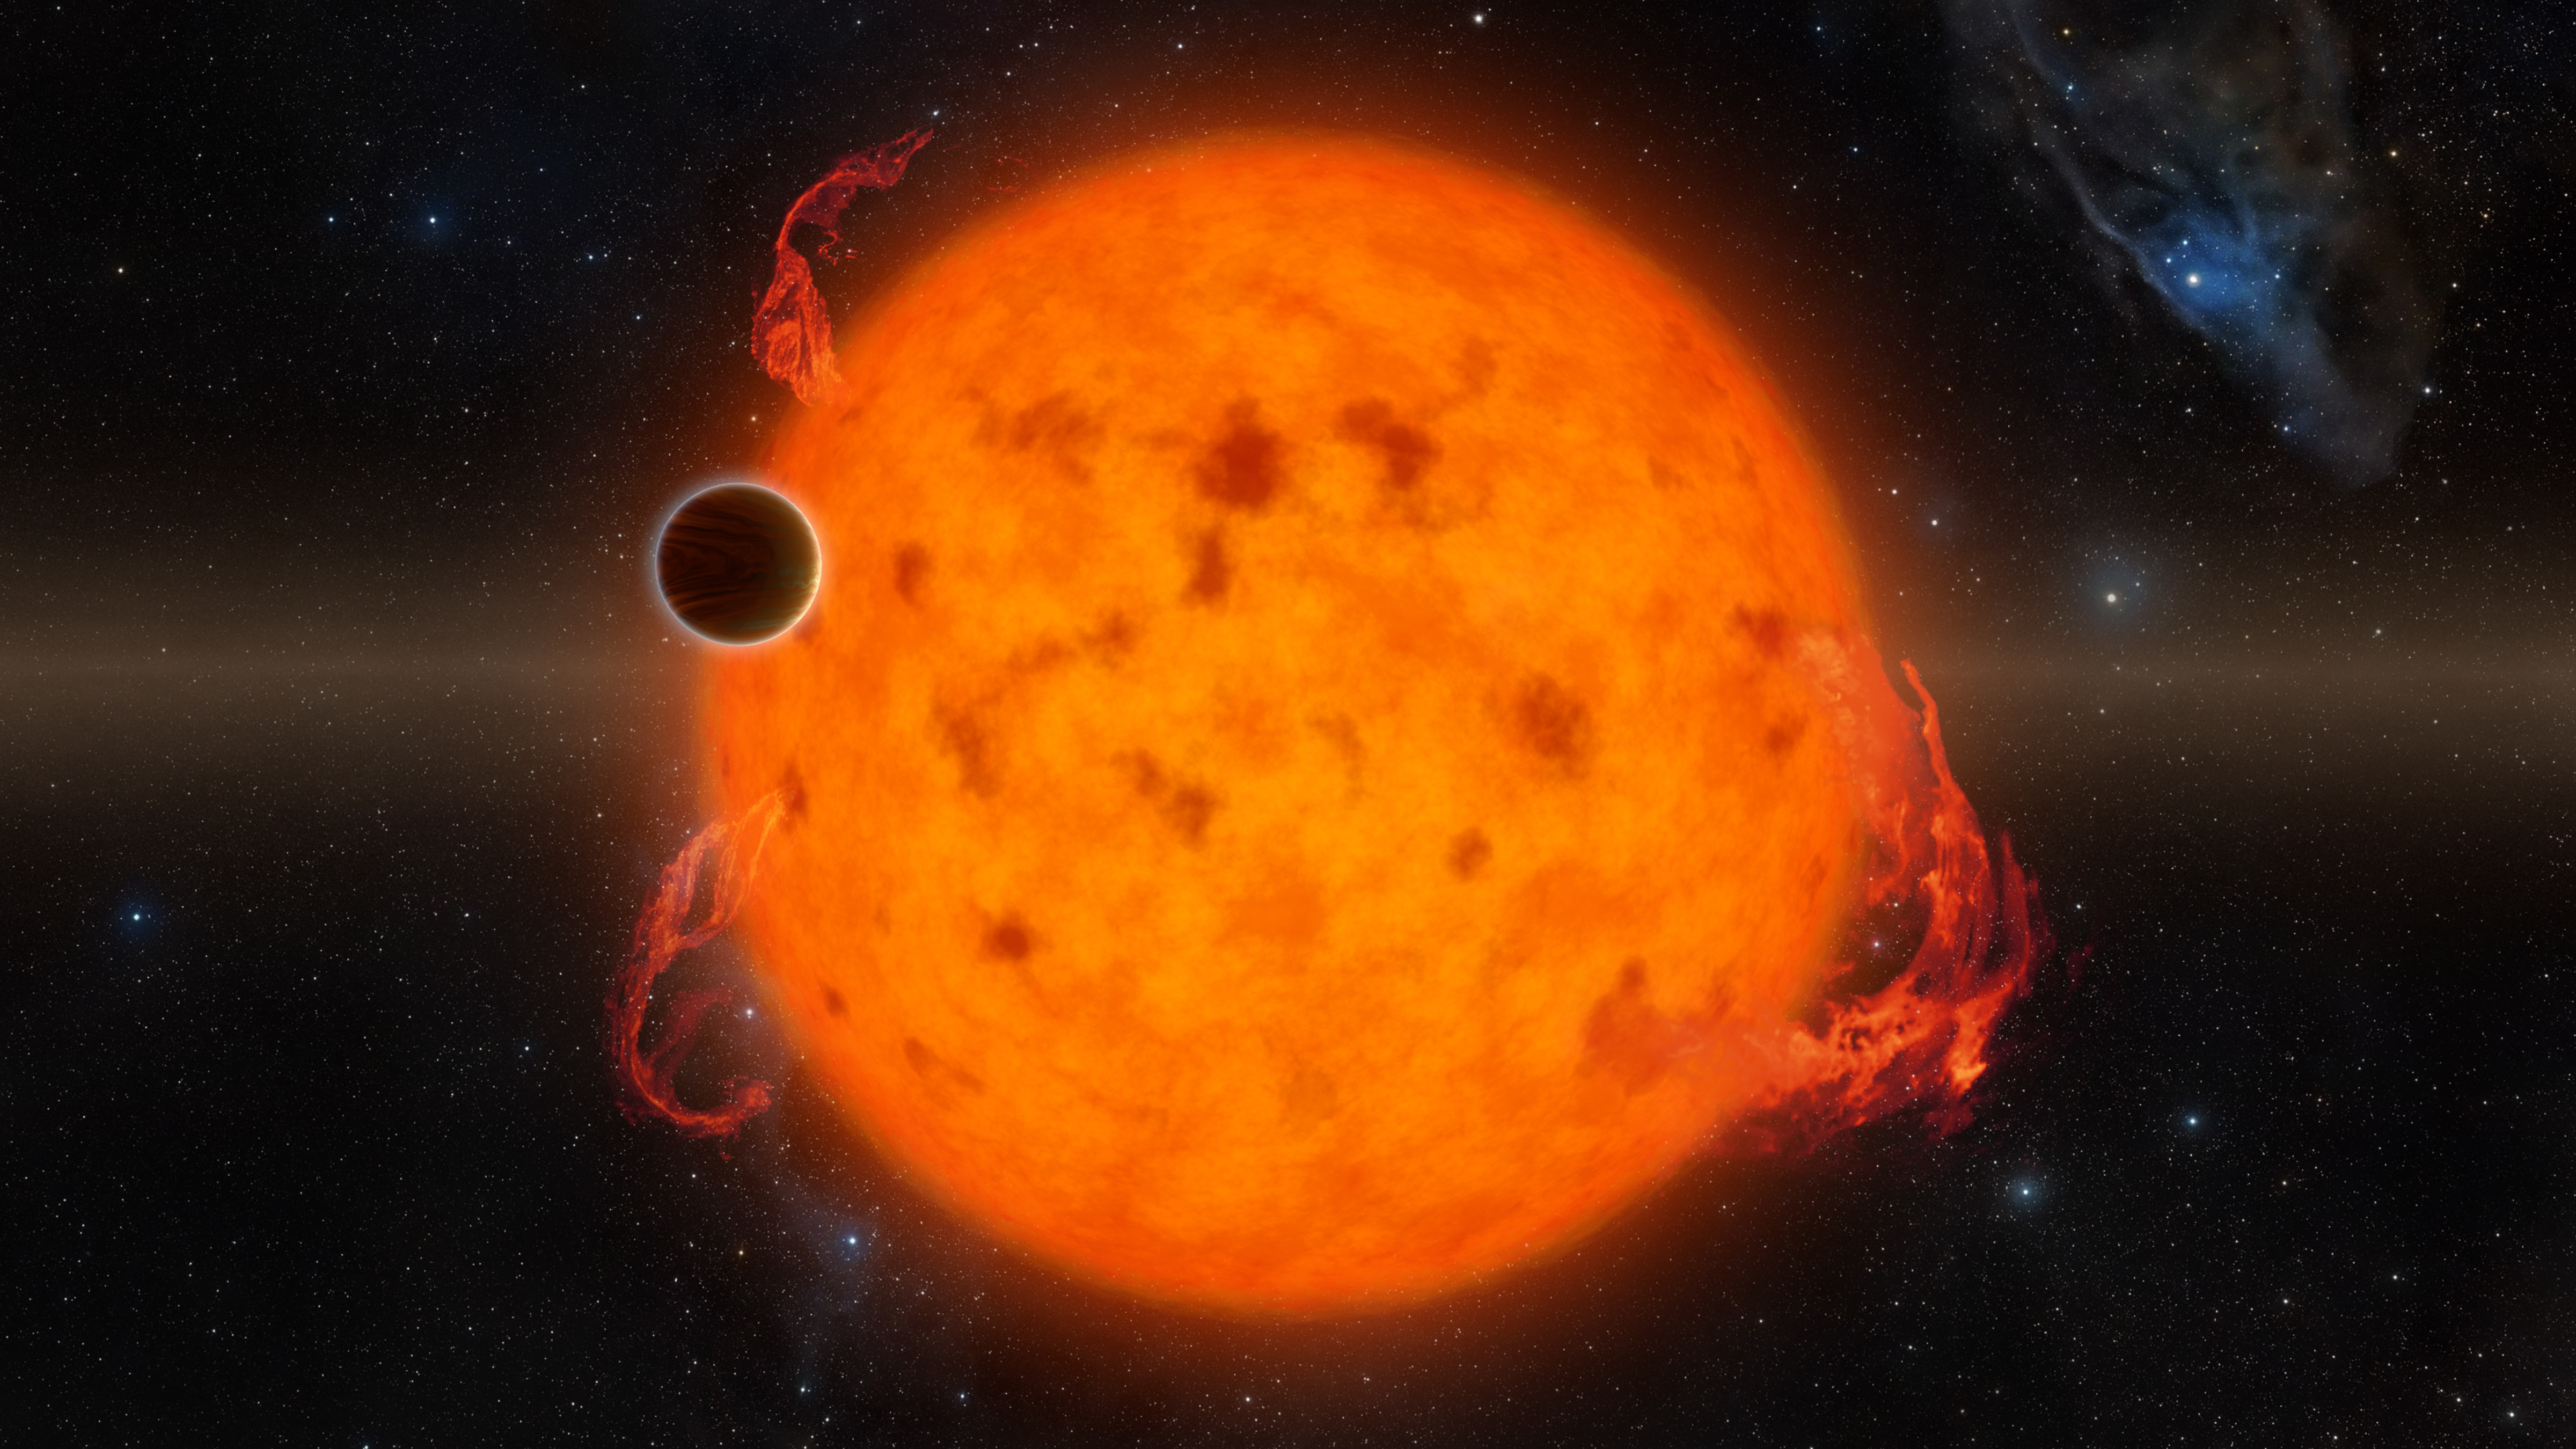 Vue d'artiste d'une exoplanète à proximité de son étoile. © Nasa / JPL-Caltech